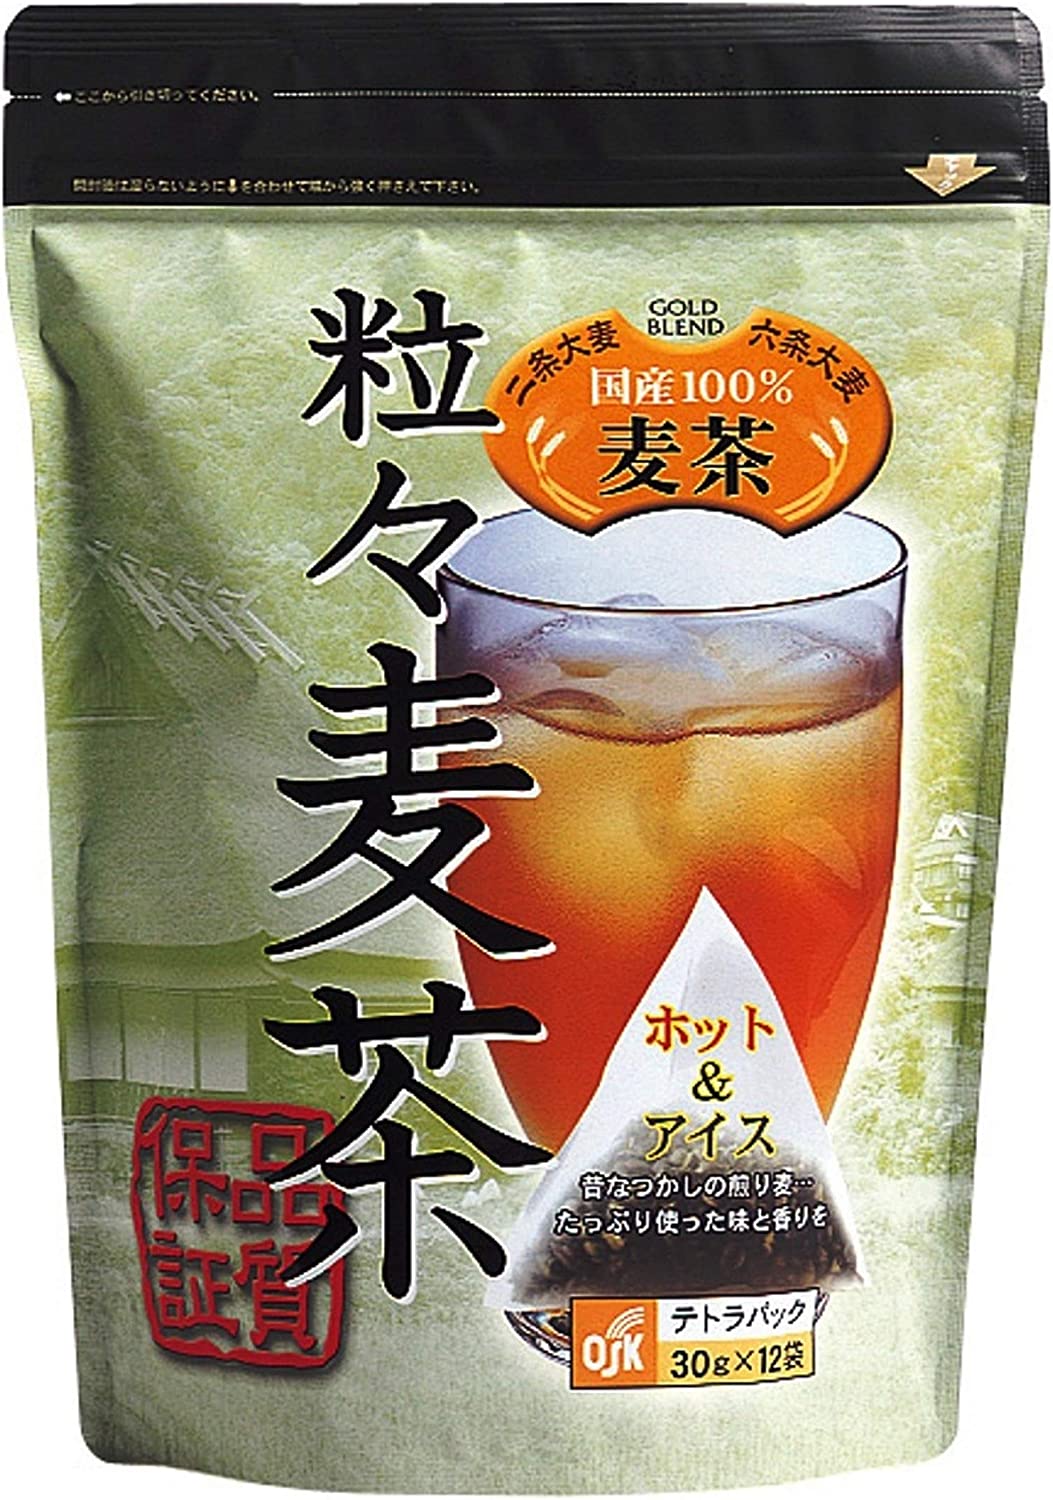 OSK Nijo &amp; Rojo Barley Tea Tea Pack 360g (30g x 12 Teabags) x 3 Packs - NihonMura